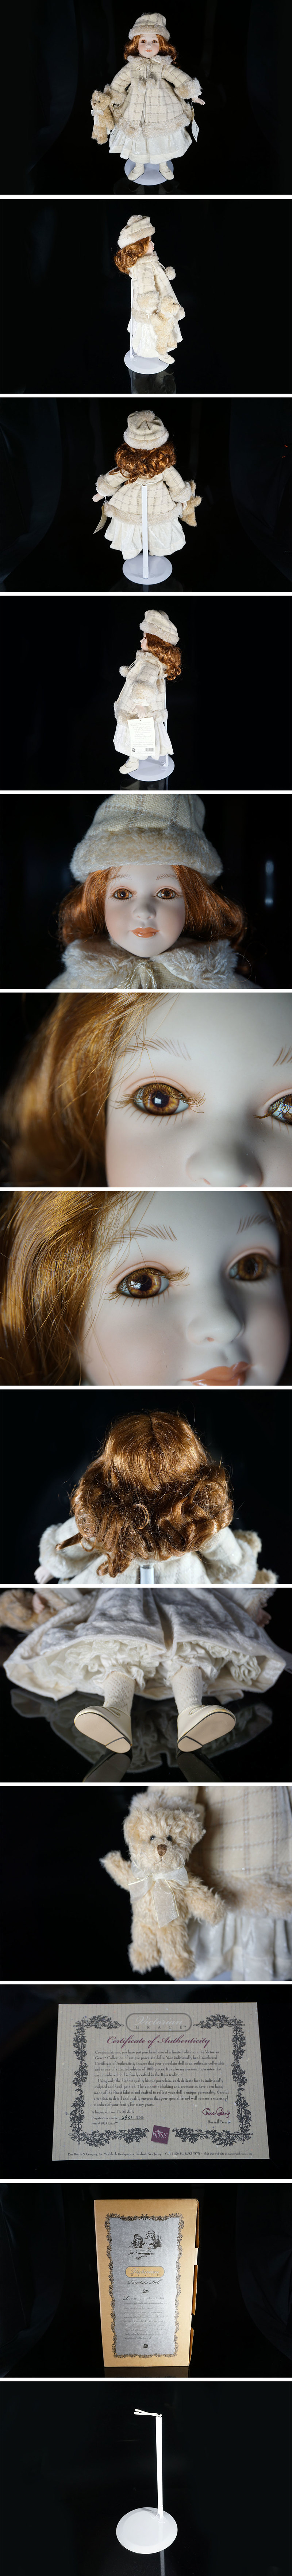 割引価格Victorian GRACE Russell Berrie ビスクドール コレクションドール 人形 全長cm 箱付 (JENRP0703 ビスクドール